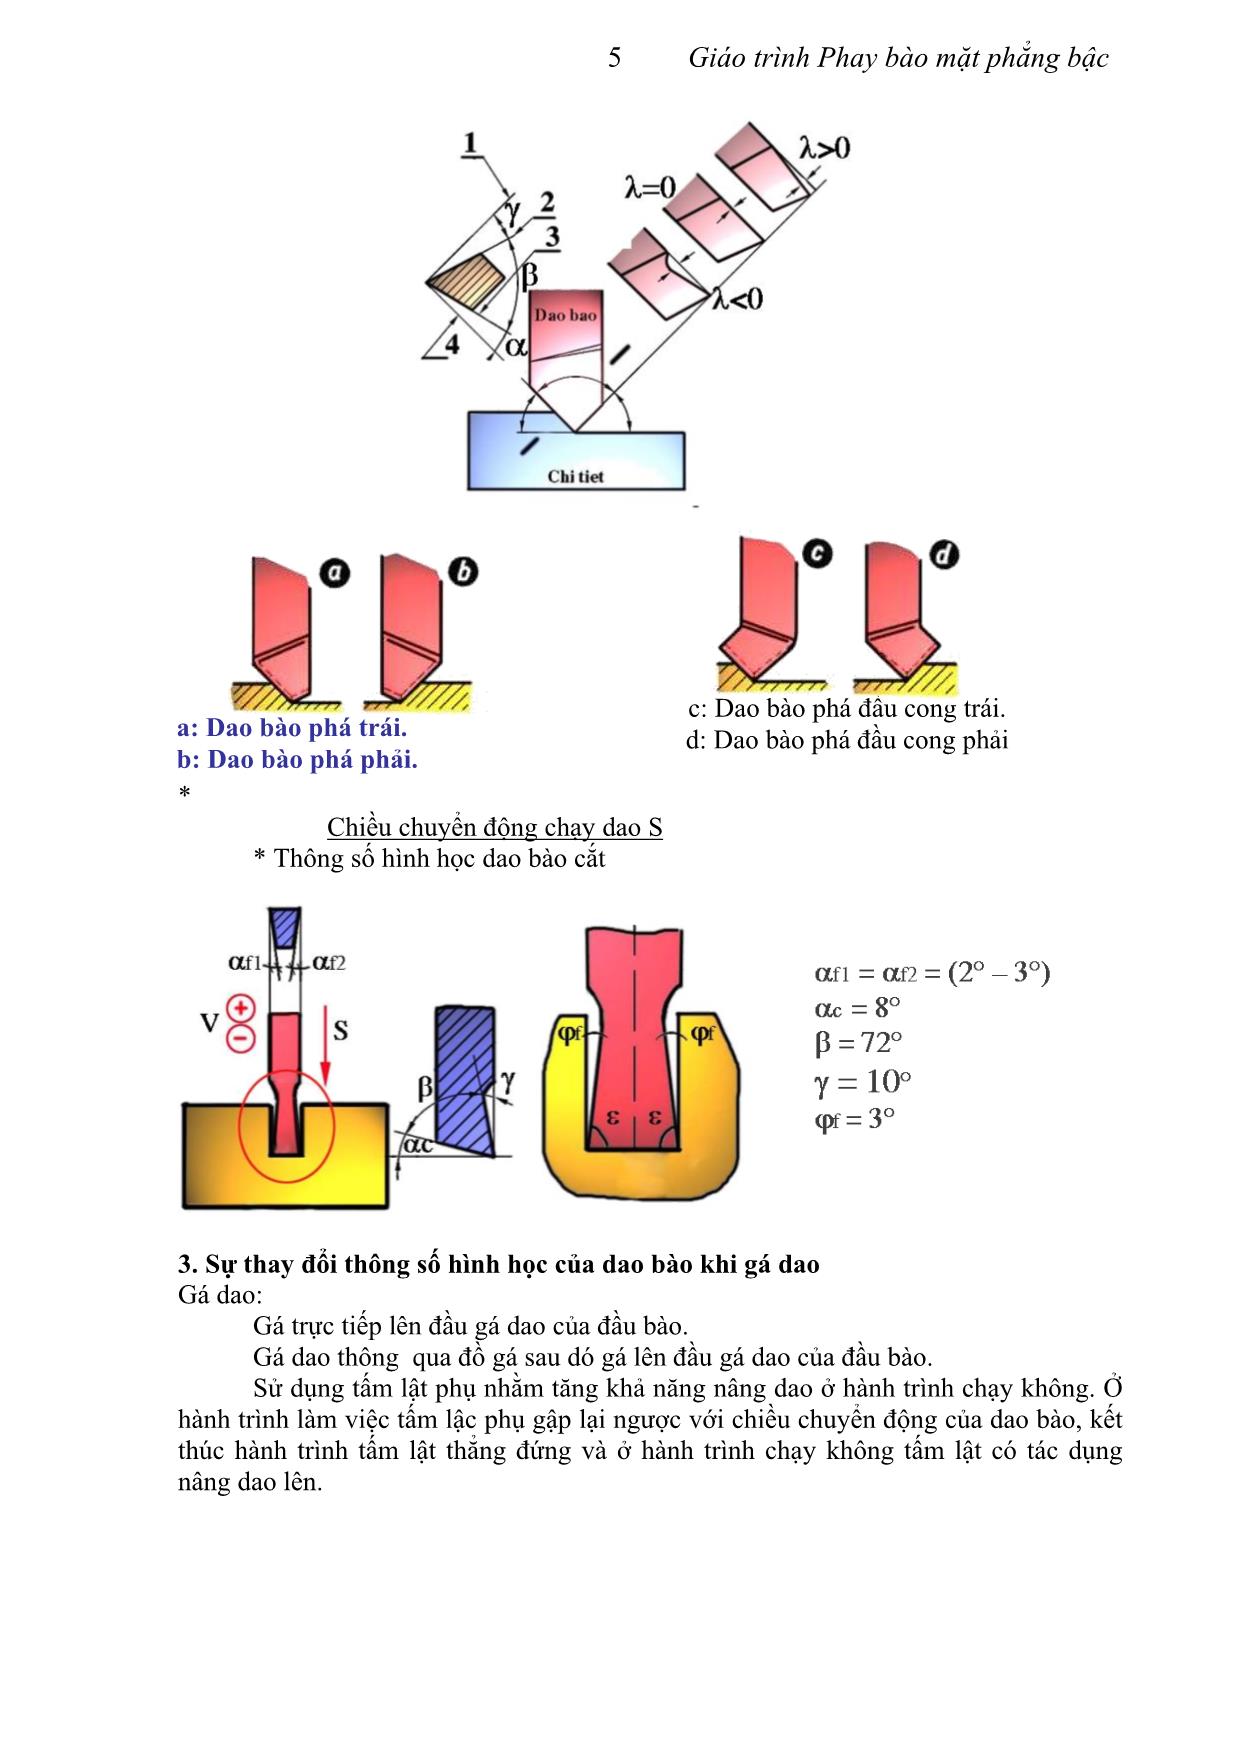 Giáo trình Phay bào mặt phẳng bậc trang 5